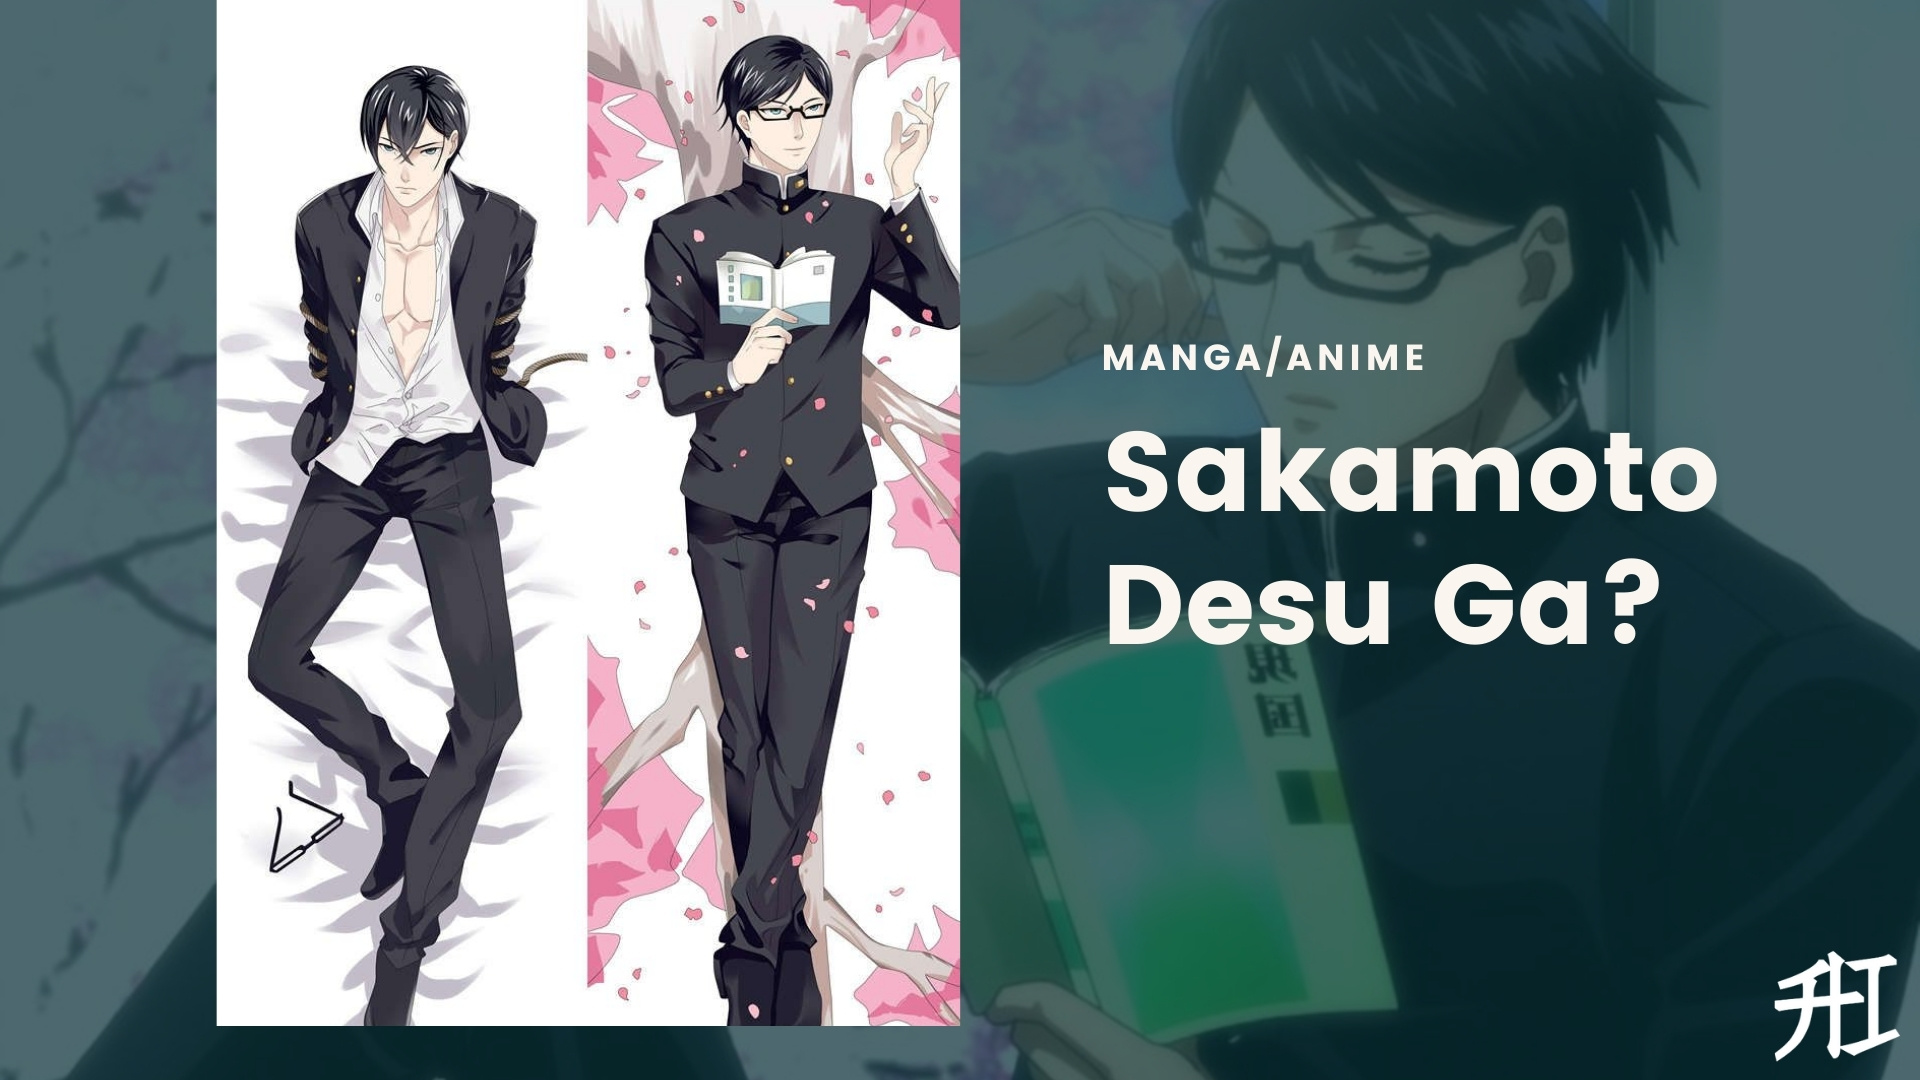 Top 10 Anime Like Sakamoto desu ga? [2023 List]